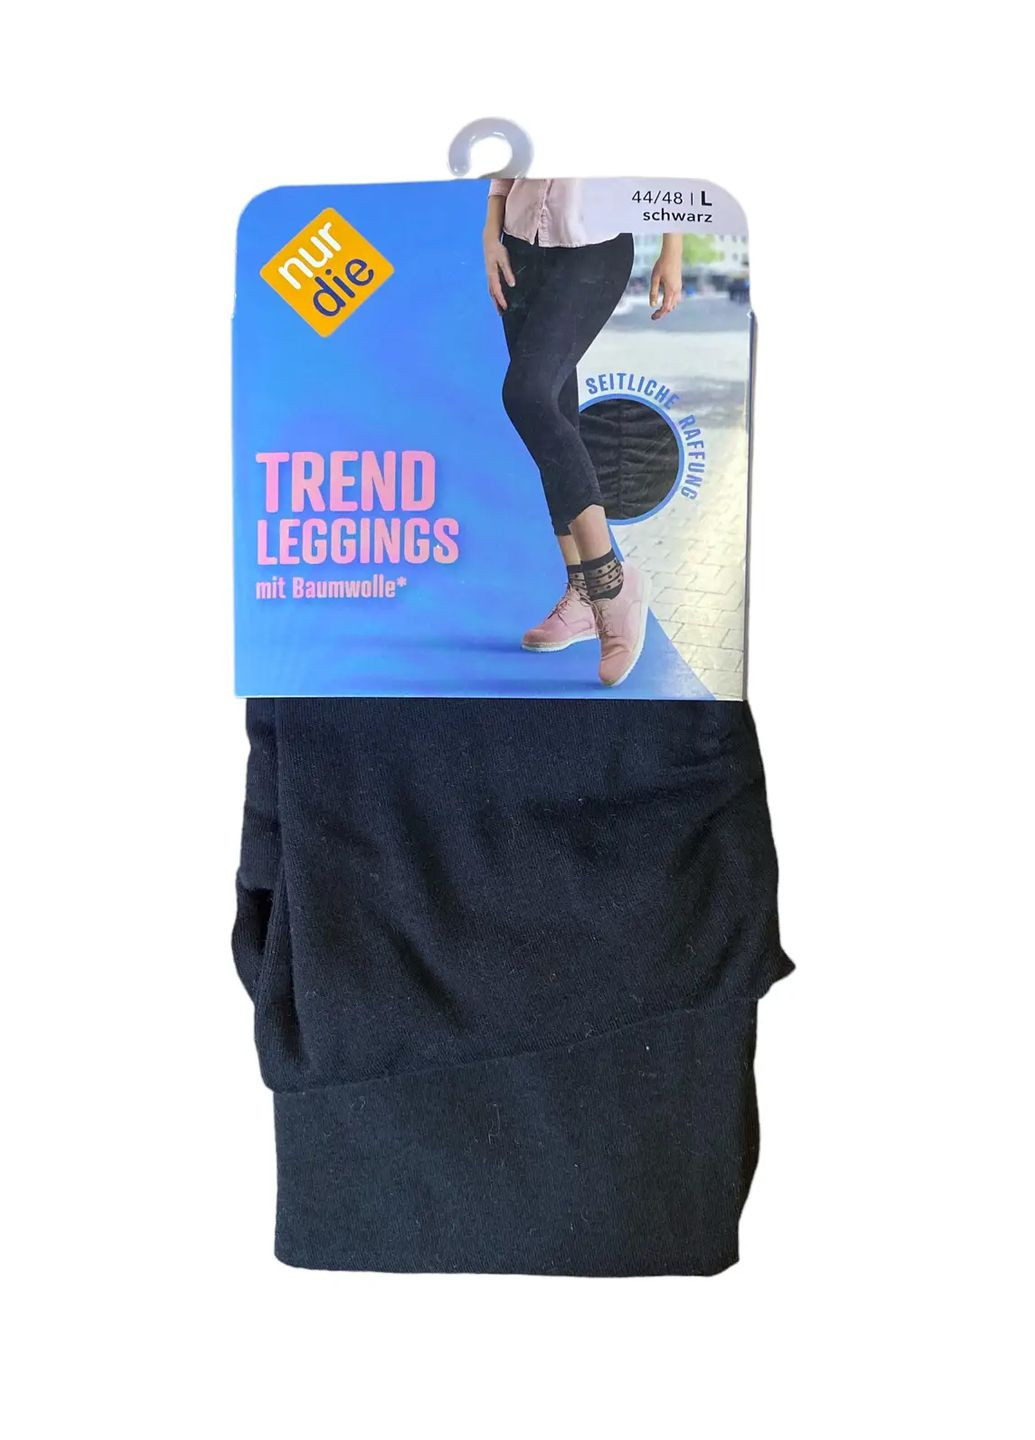 Черные демисезонные женские леггинсы хлопчатобумажные trend leggings 44-48 (l) черные (711011) Nur Die